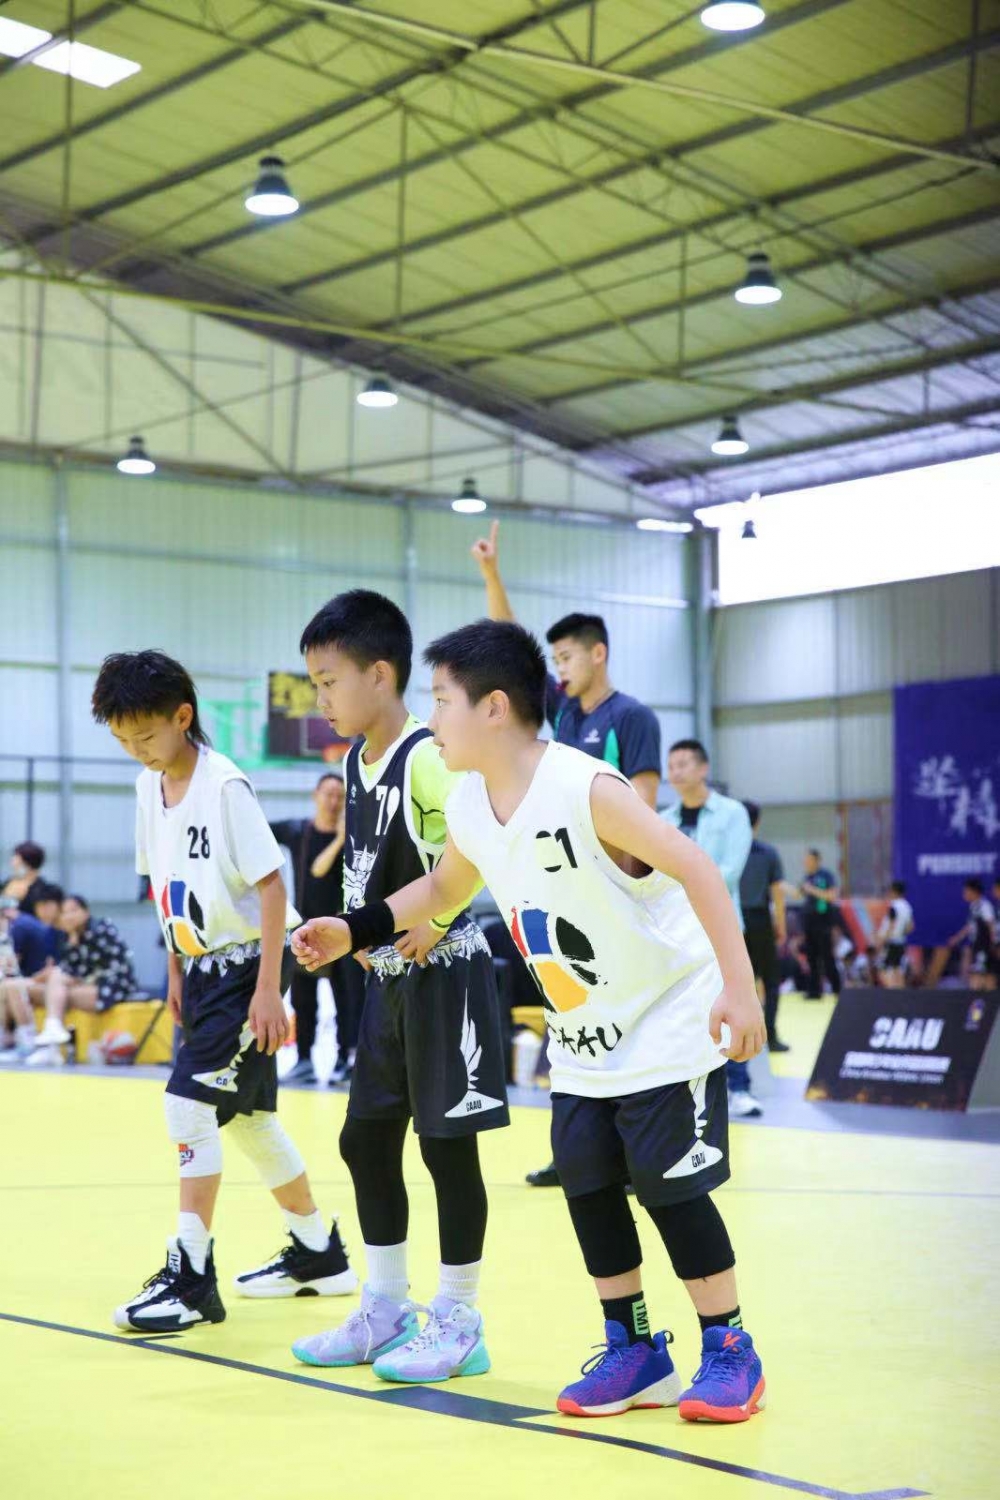 全国青少年篮球联赛重庆站首次举行冠军将代表重庆参加总决赛